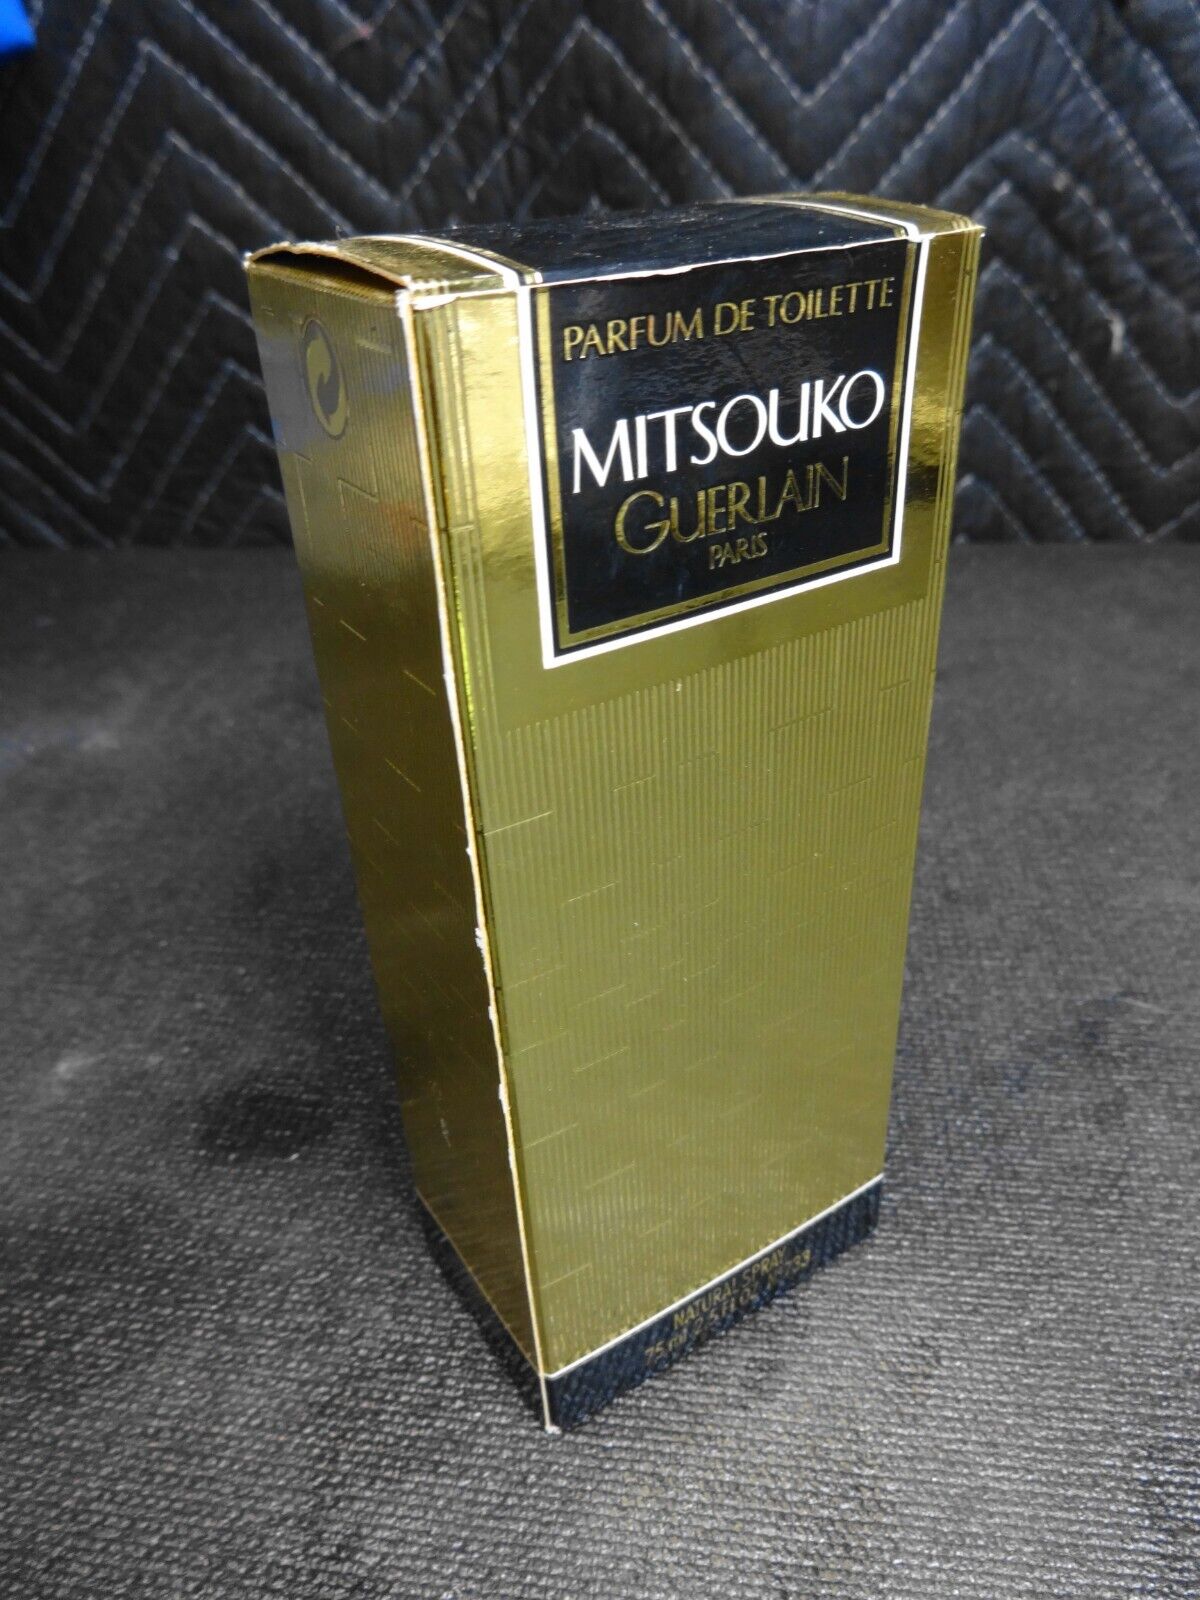 1983 GUERLAIN PARIS MITSOUKO Parfum De Toilette 75 ml Spray - Vintage Formula